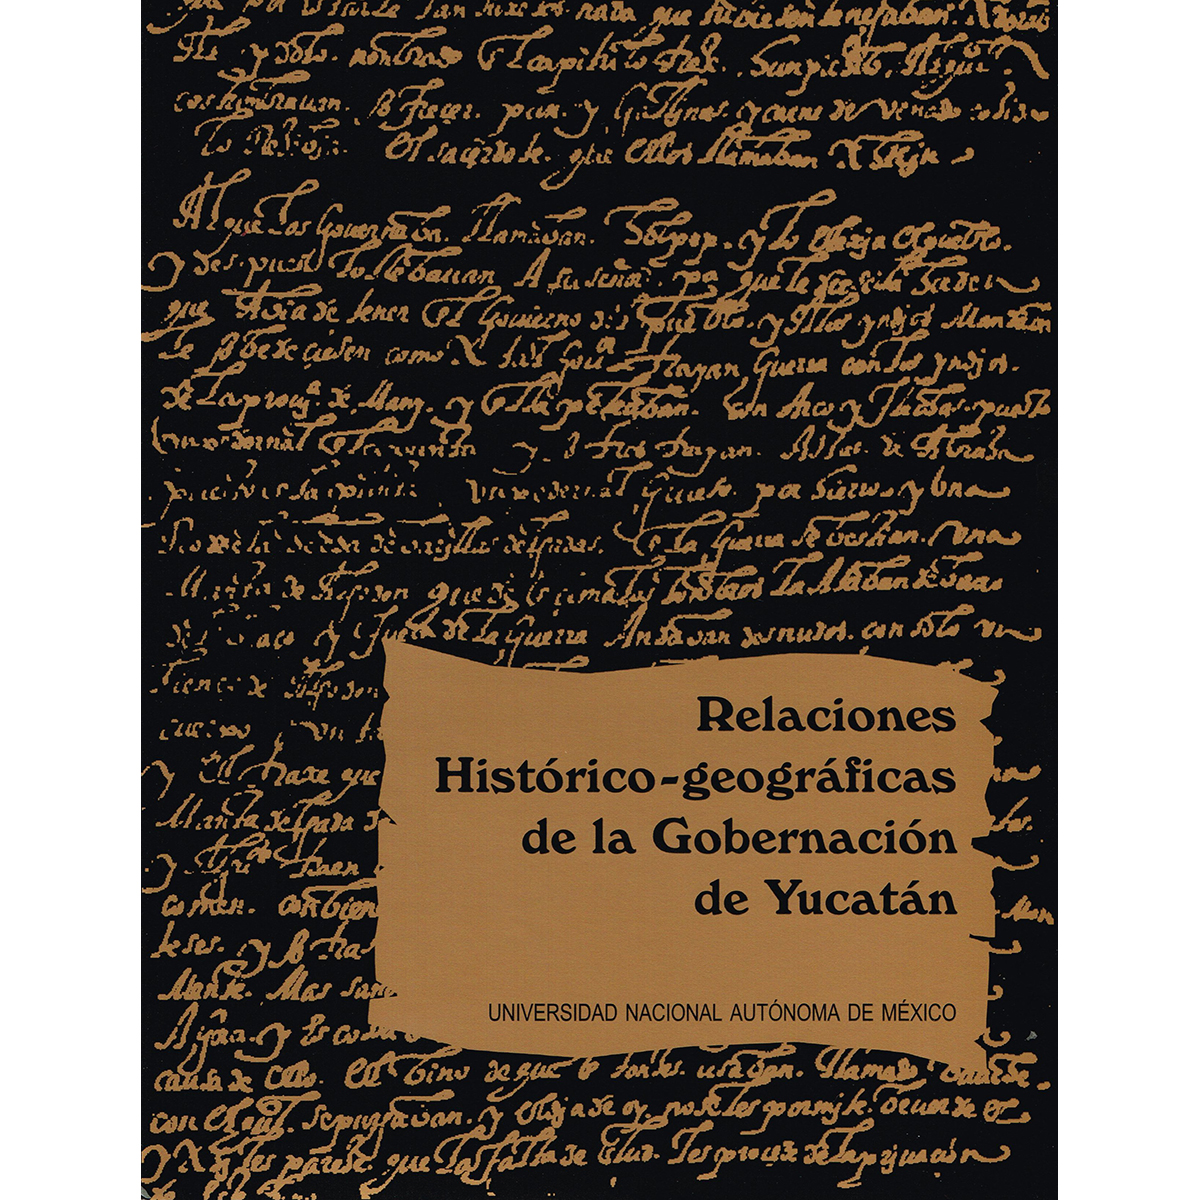 RELACIONES HISTÓRICO-GEOGRÁFICAS DE LA GOBERNACIÓN DE YUCATÁN. MÉRIDA, VALLADOLID Y TABASCO